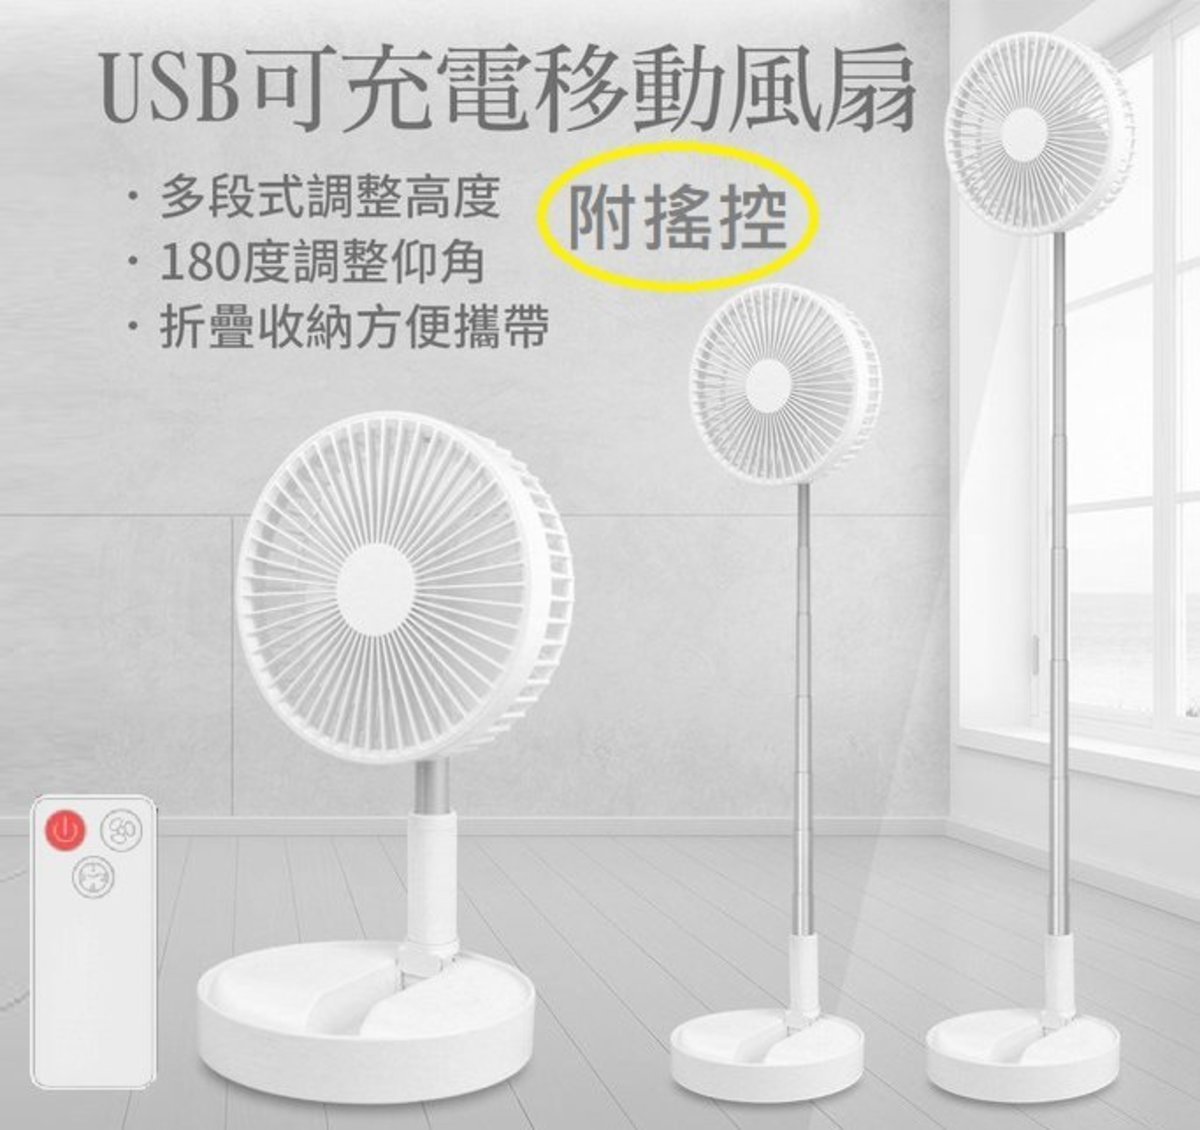 small white desk fan